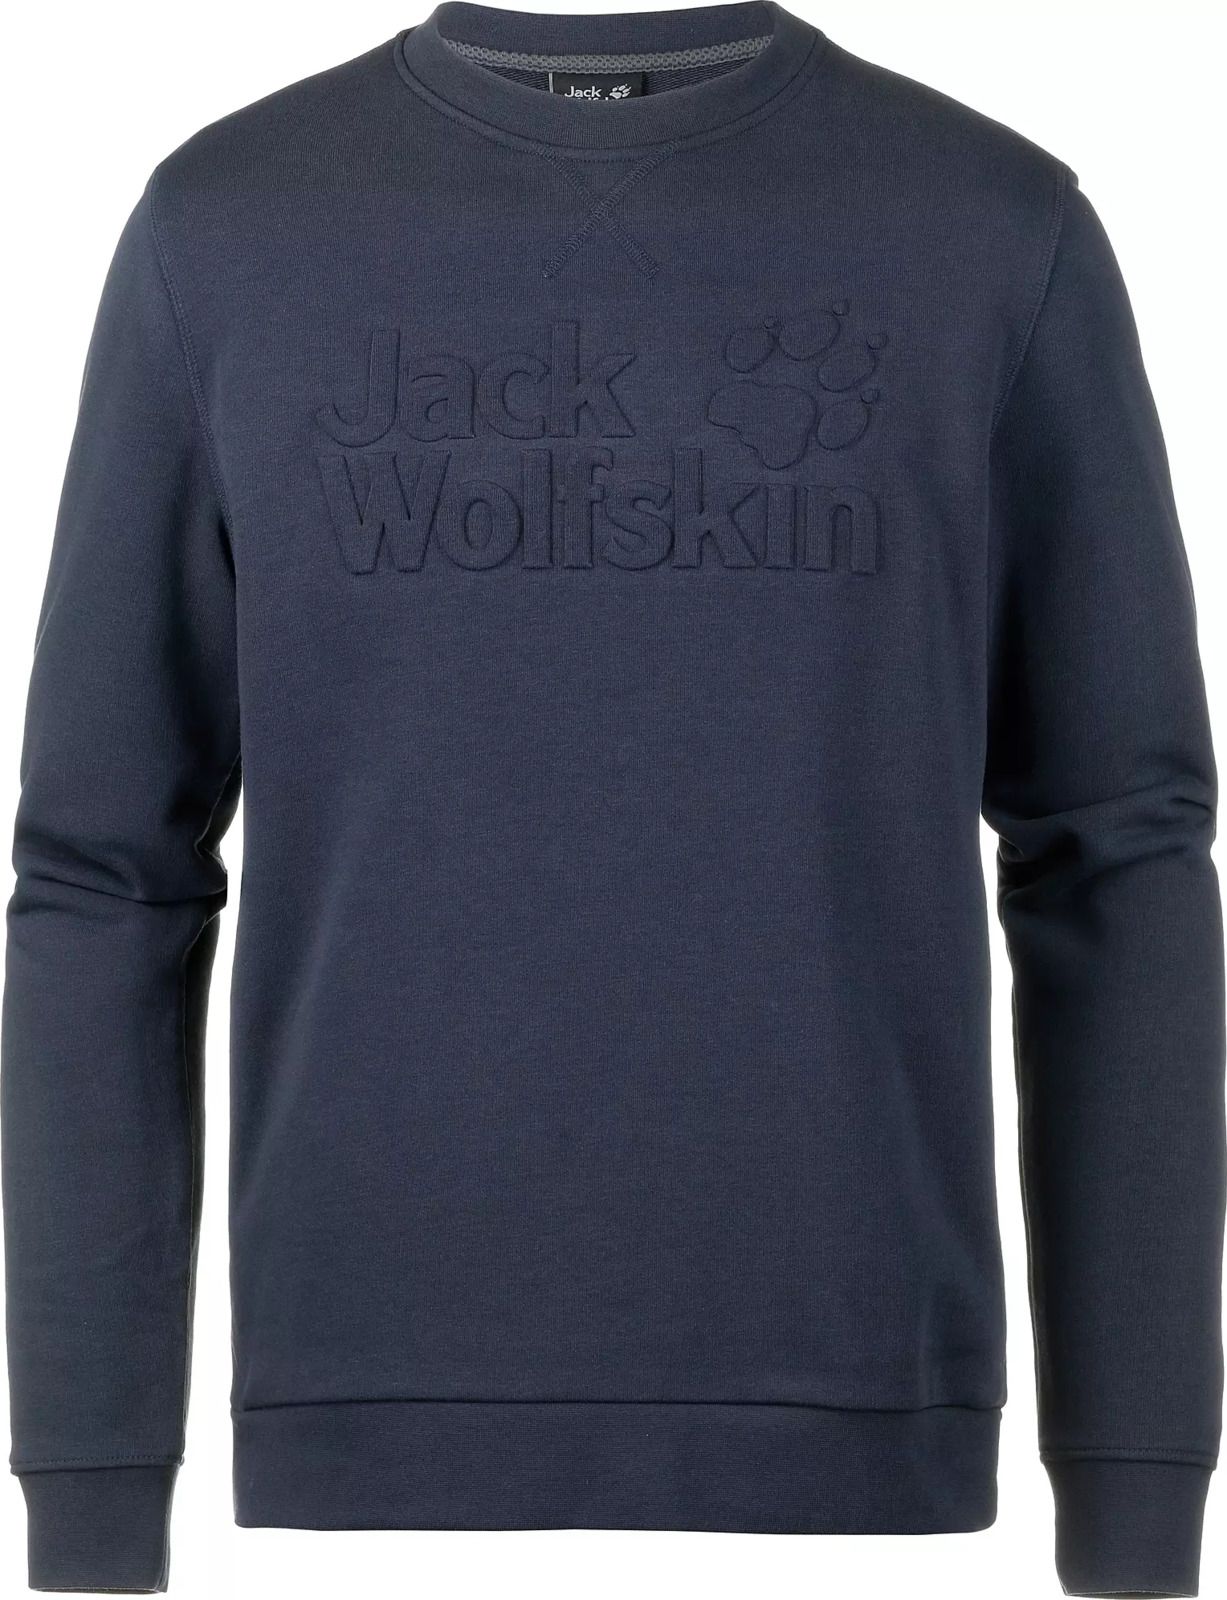   Jack Wolfskin Logo Sweatshirt M, : -. 5018891-1010.  M (46)